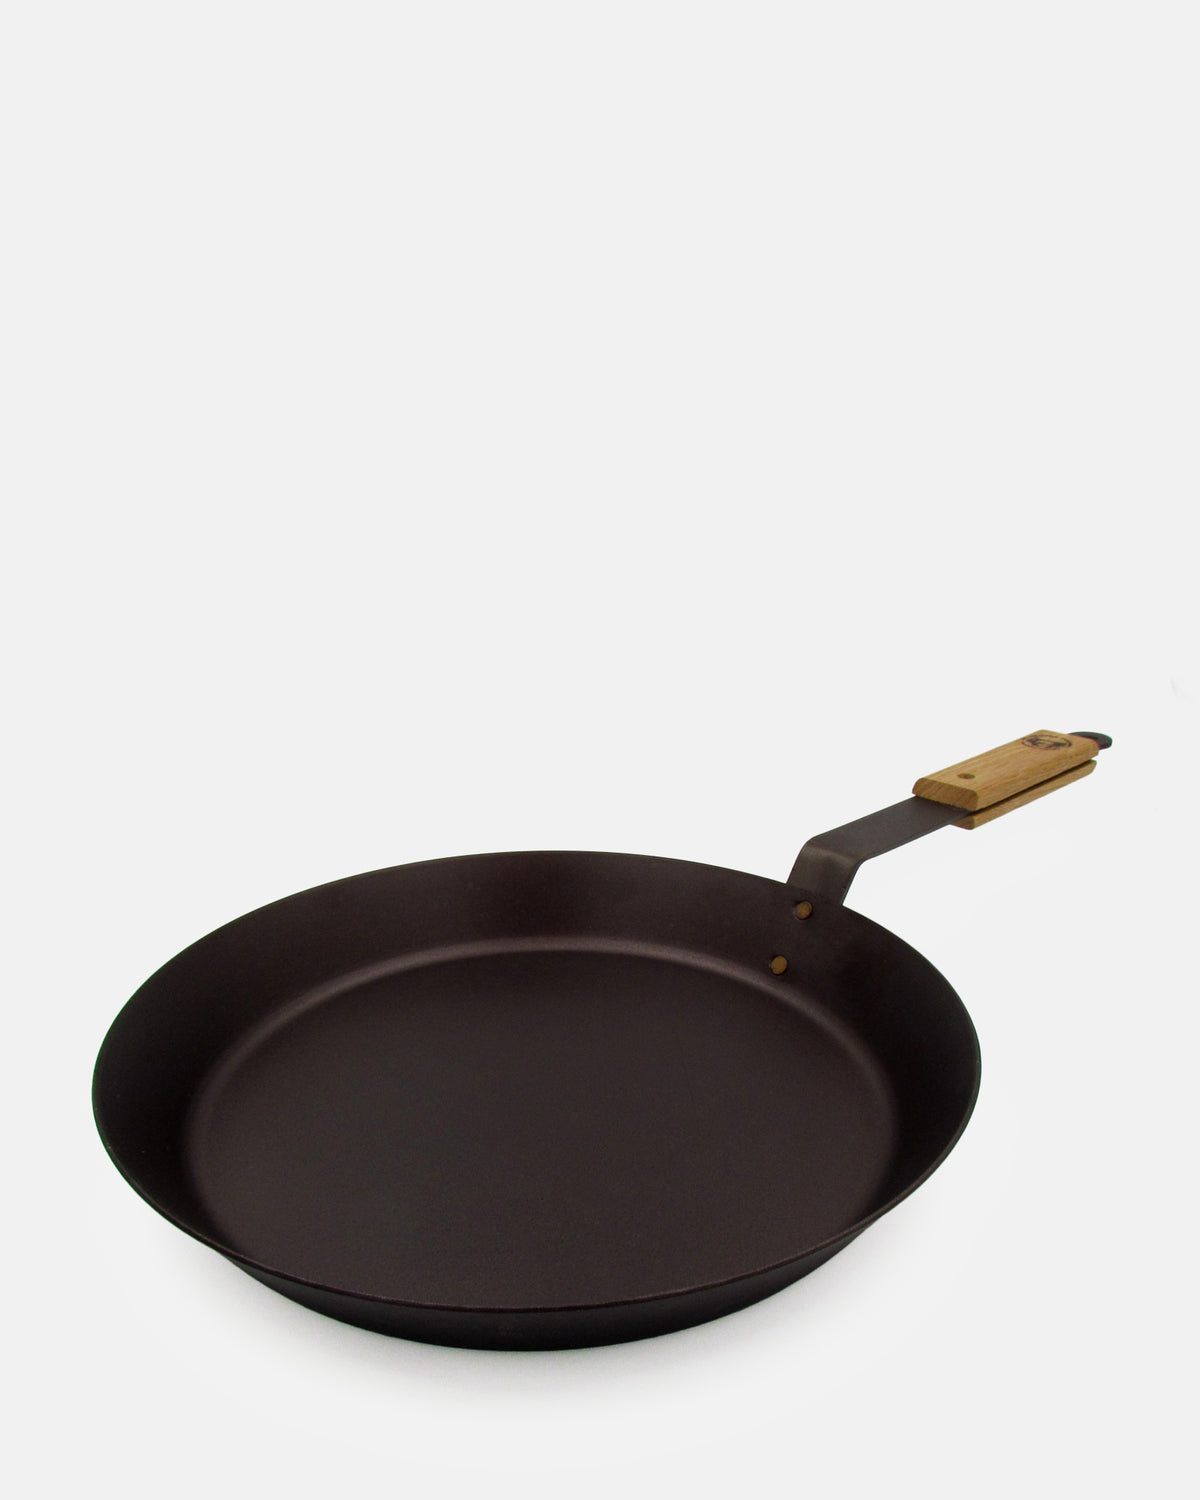 12 inch (30cm) Spun Iron Glamping Frying Pan